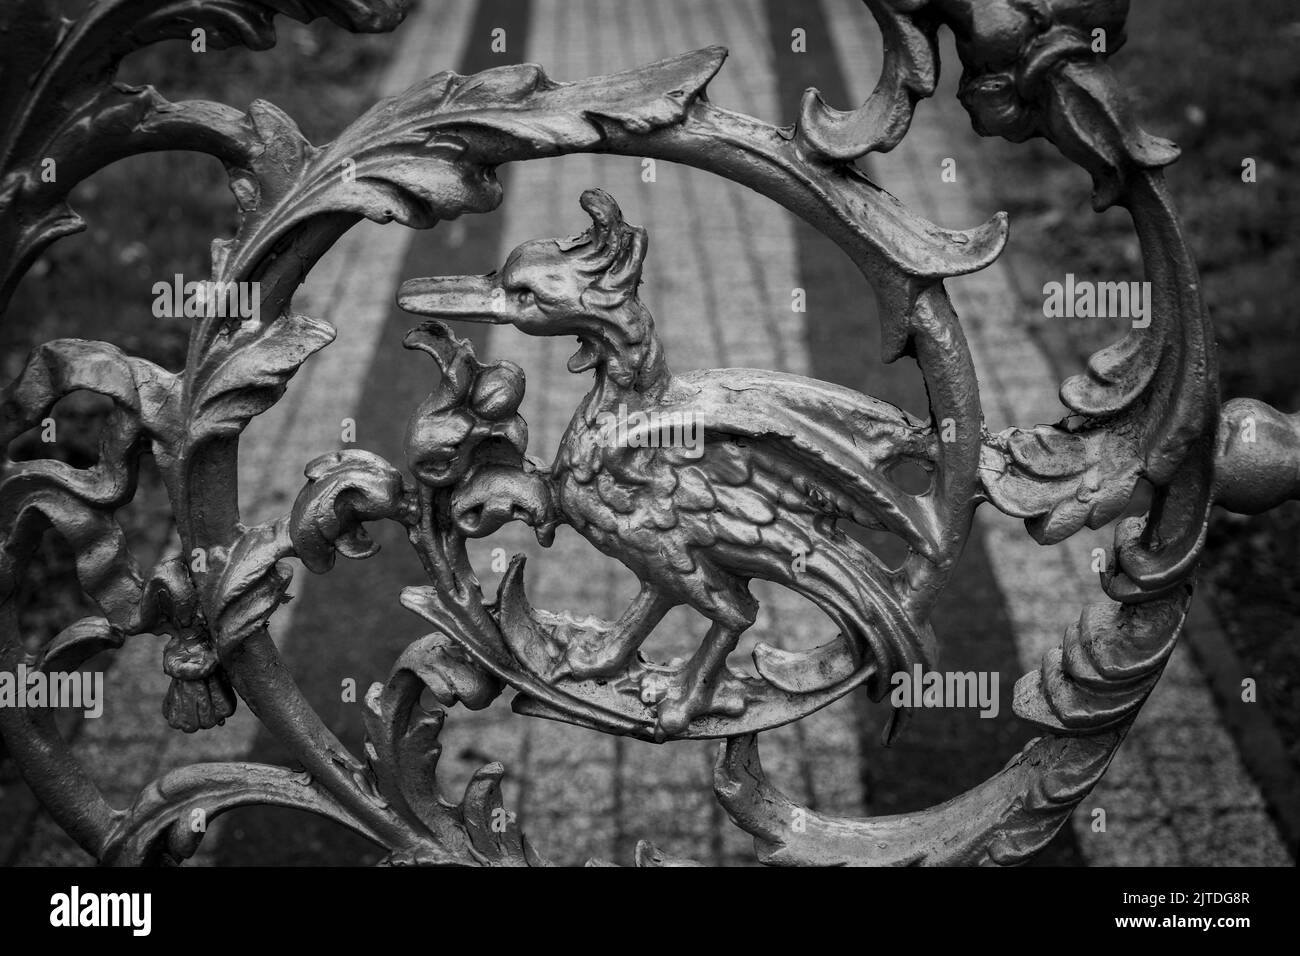 Kunstvolle Metallarbeiten, die phönix mythischen Vogel darstellen Stockfoto